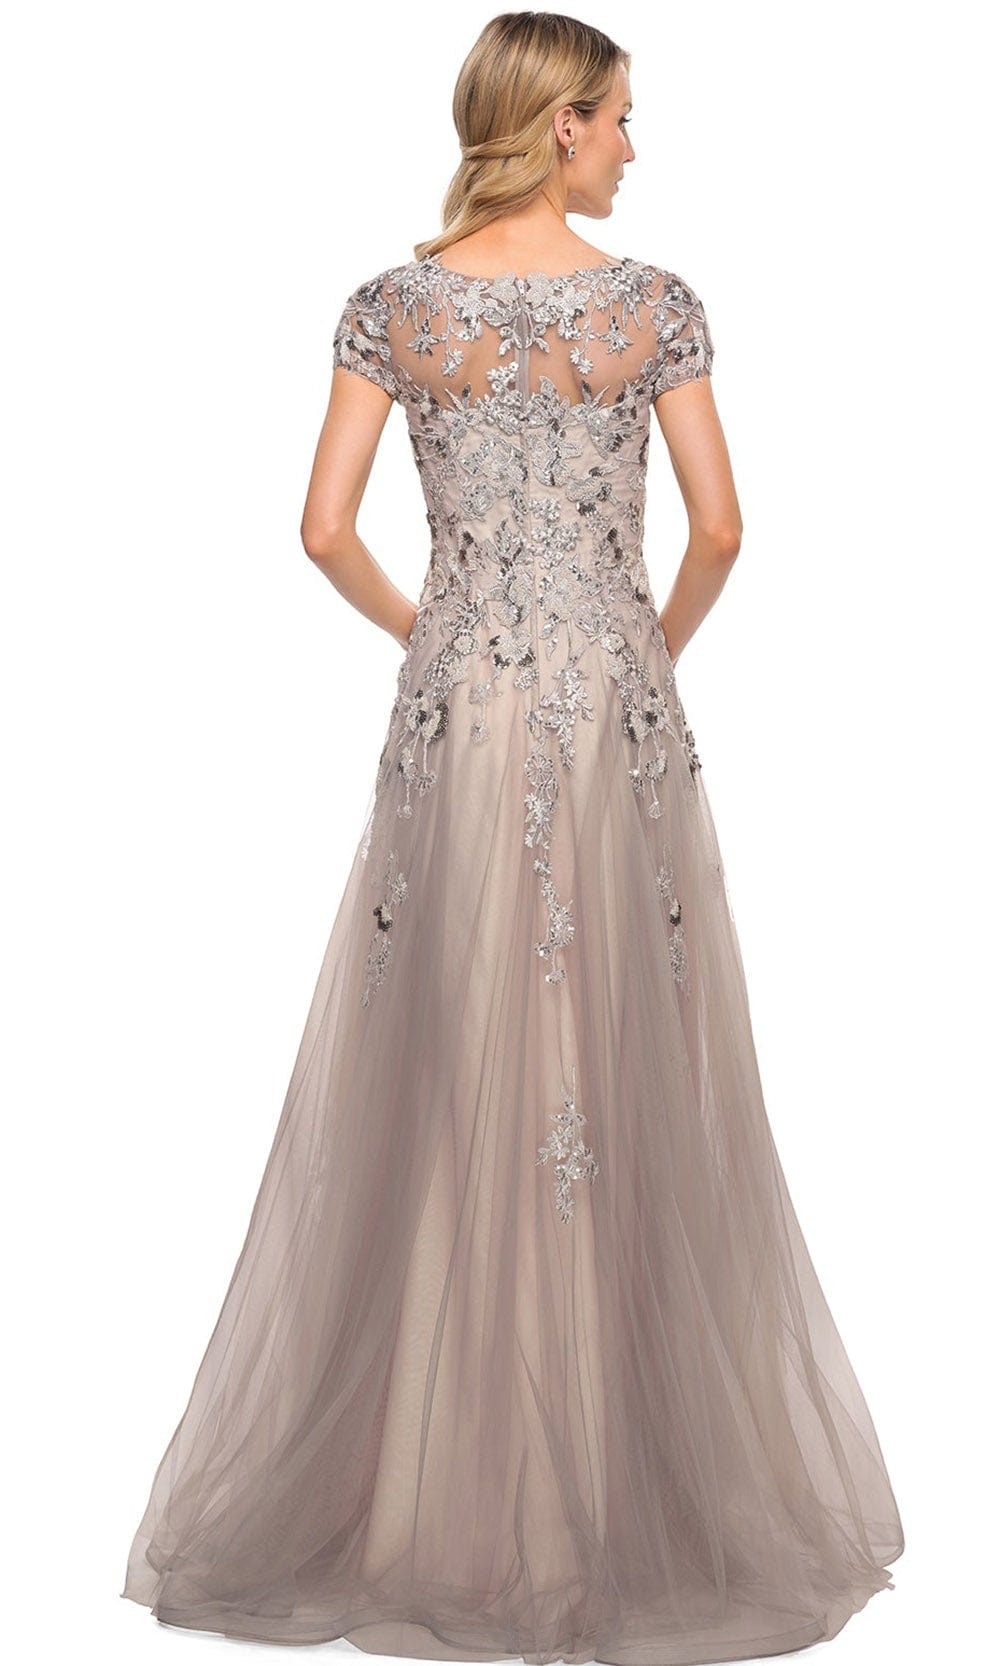 La Femme 30239SC - Embellished V-Neck Formal Dress Special Occasion Dresses